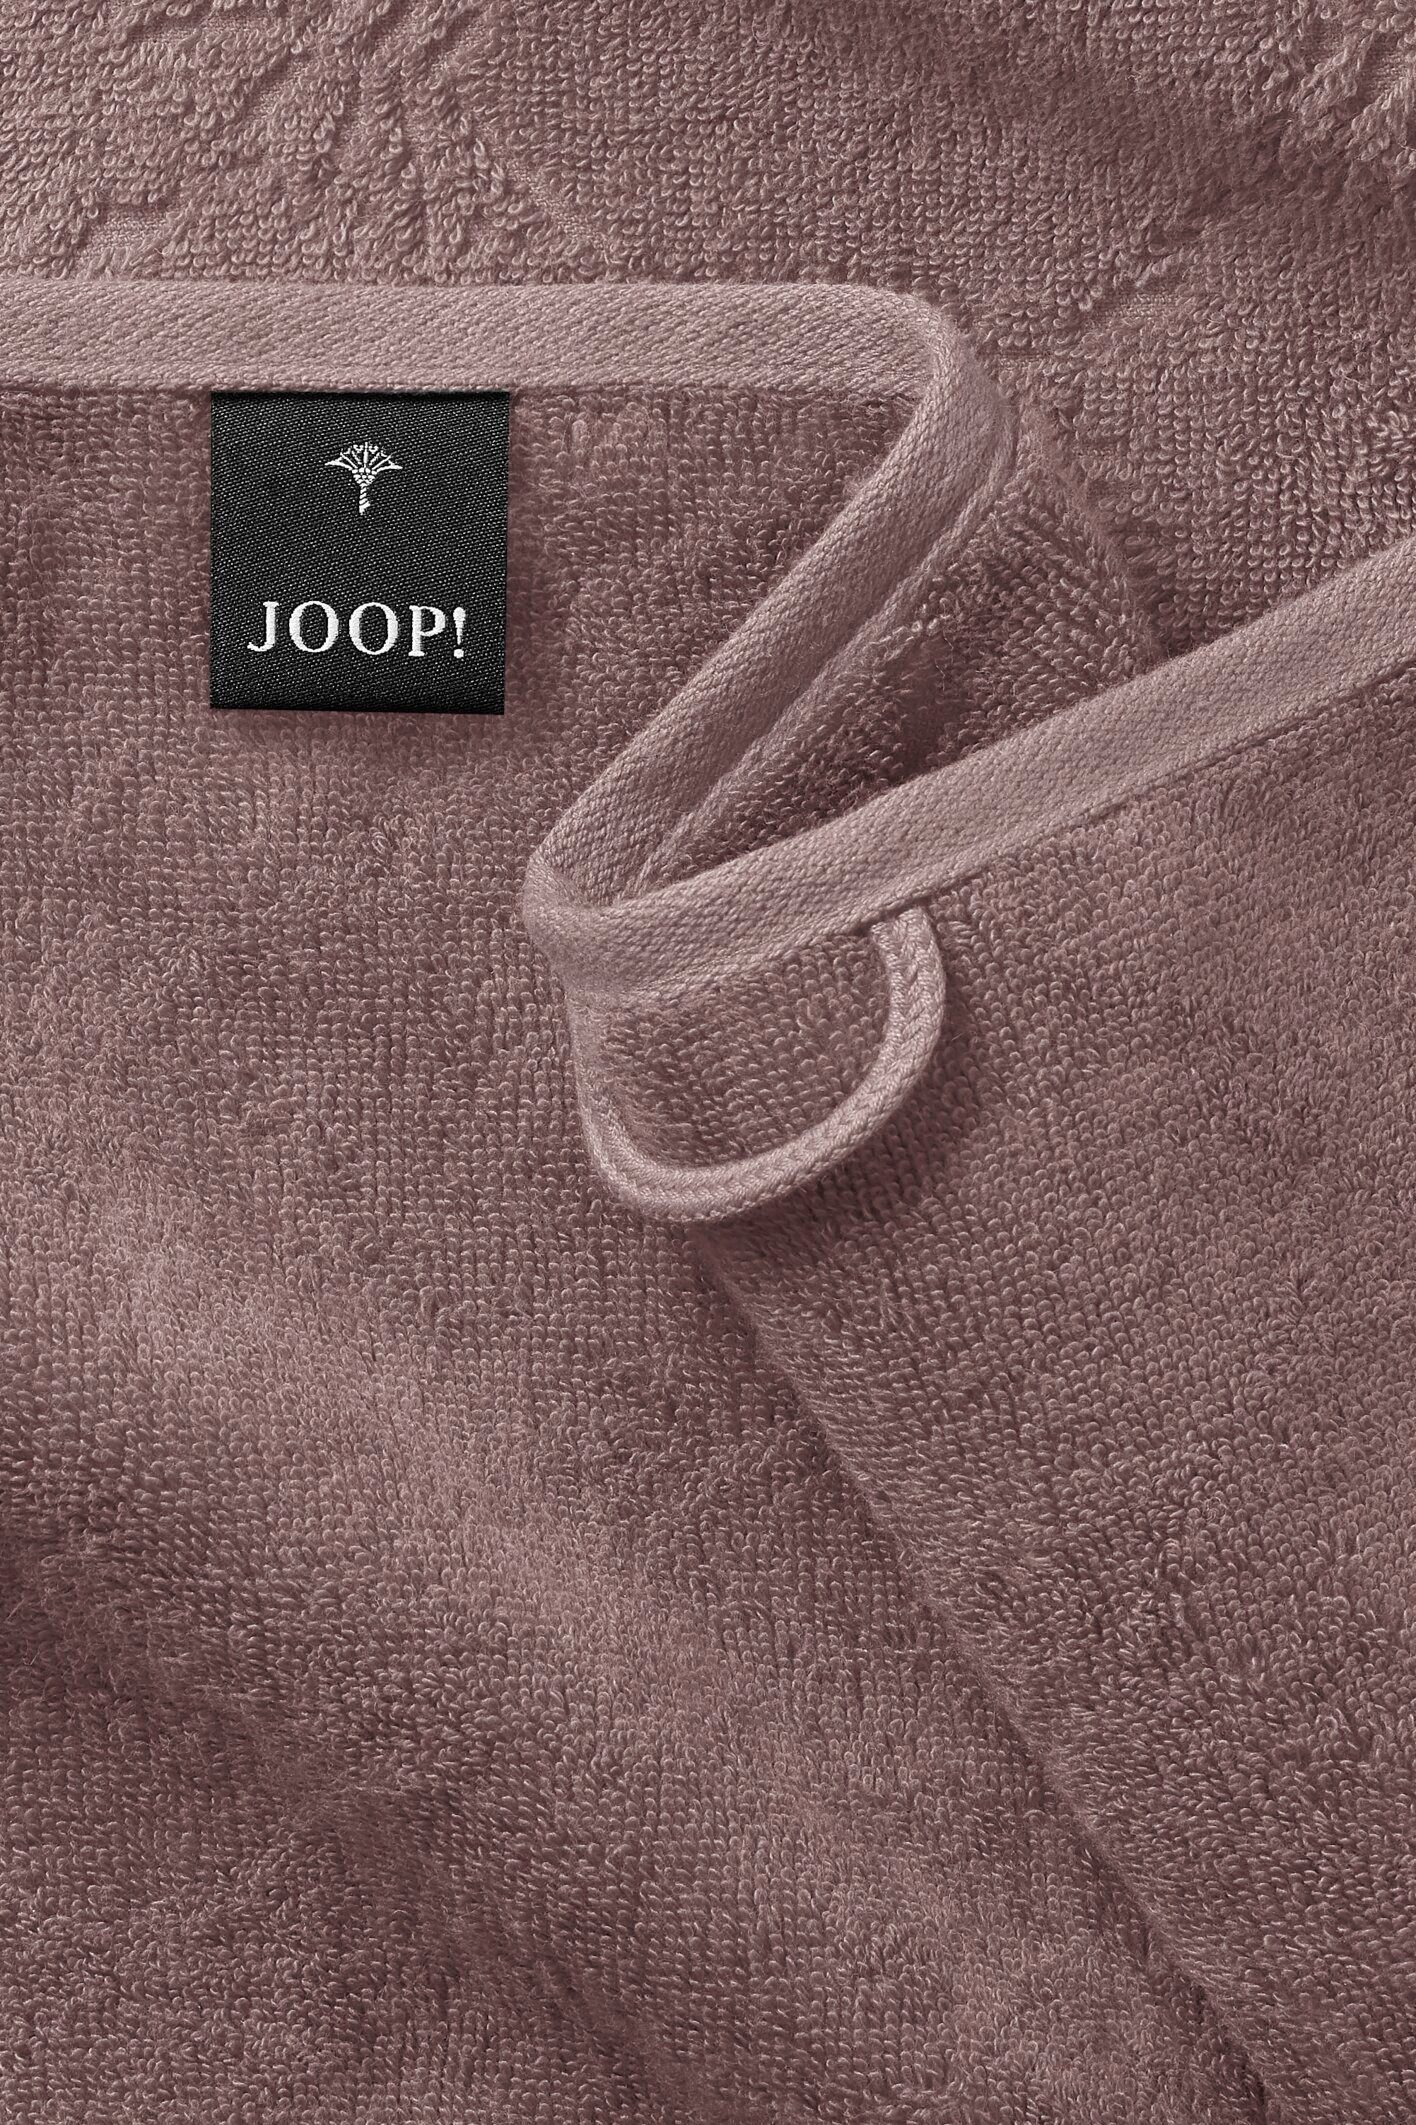 Joop! - CORNFLOWER Textil Mauve UNI LIVING Handtuch-Set, JOOP! (2-St) Handtücher